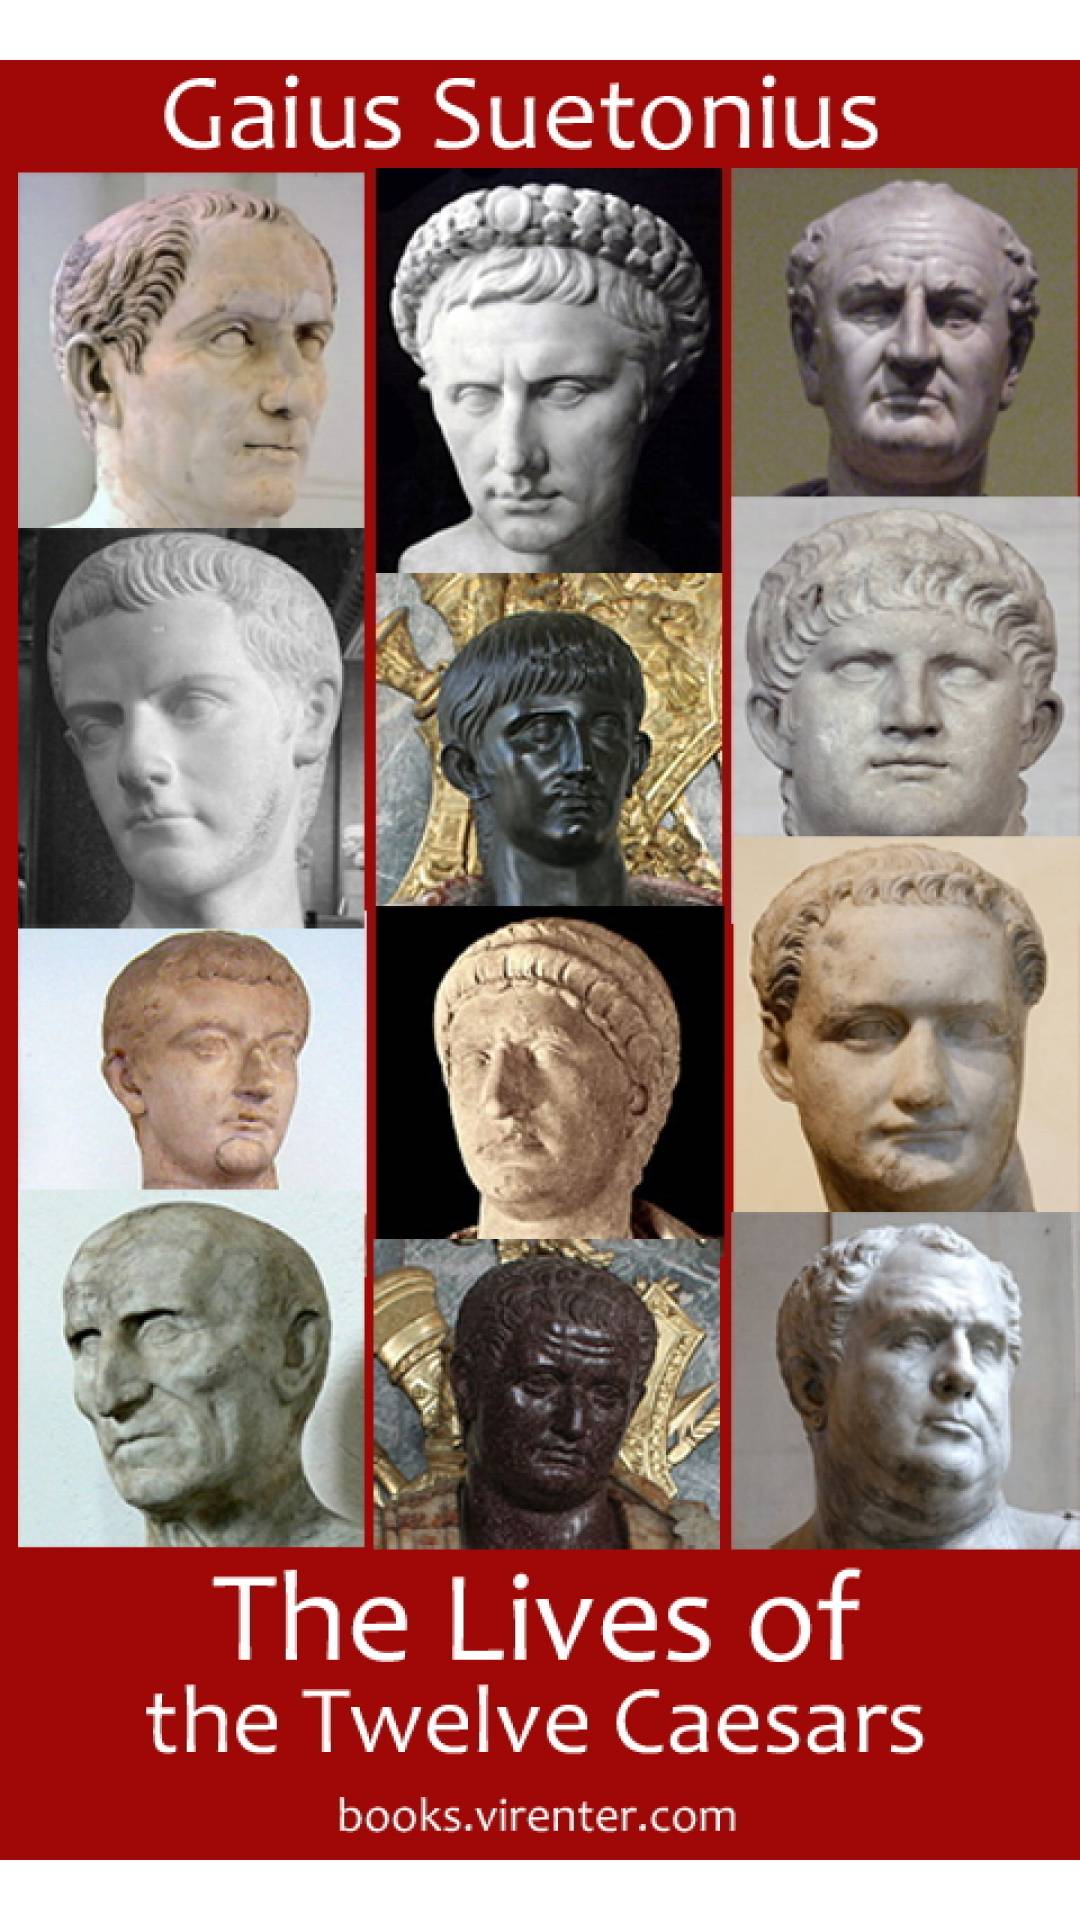 Gaius Suetonius - The Lives of the Twelve Caesars